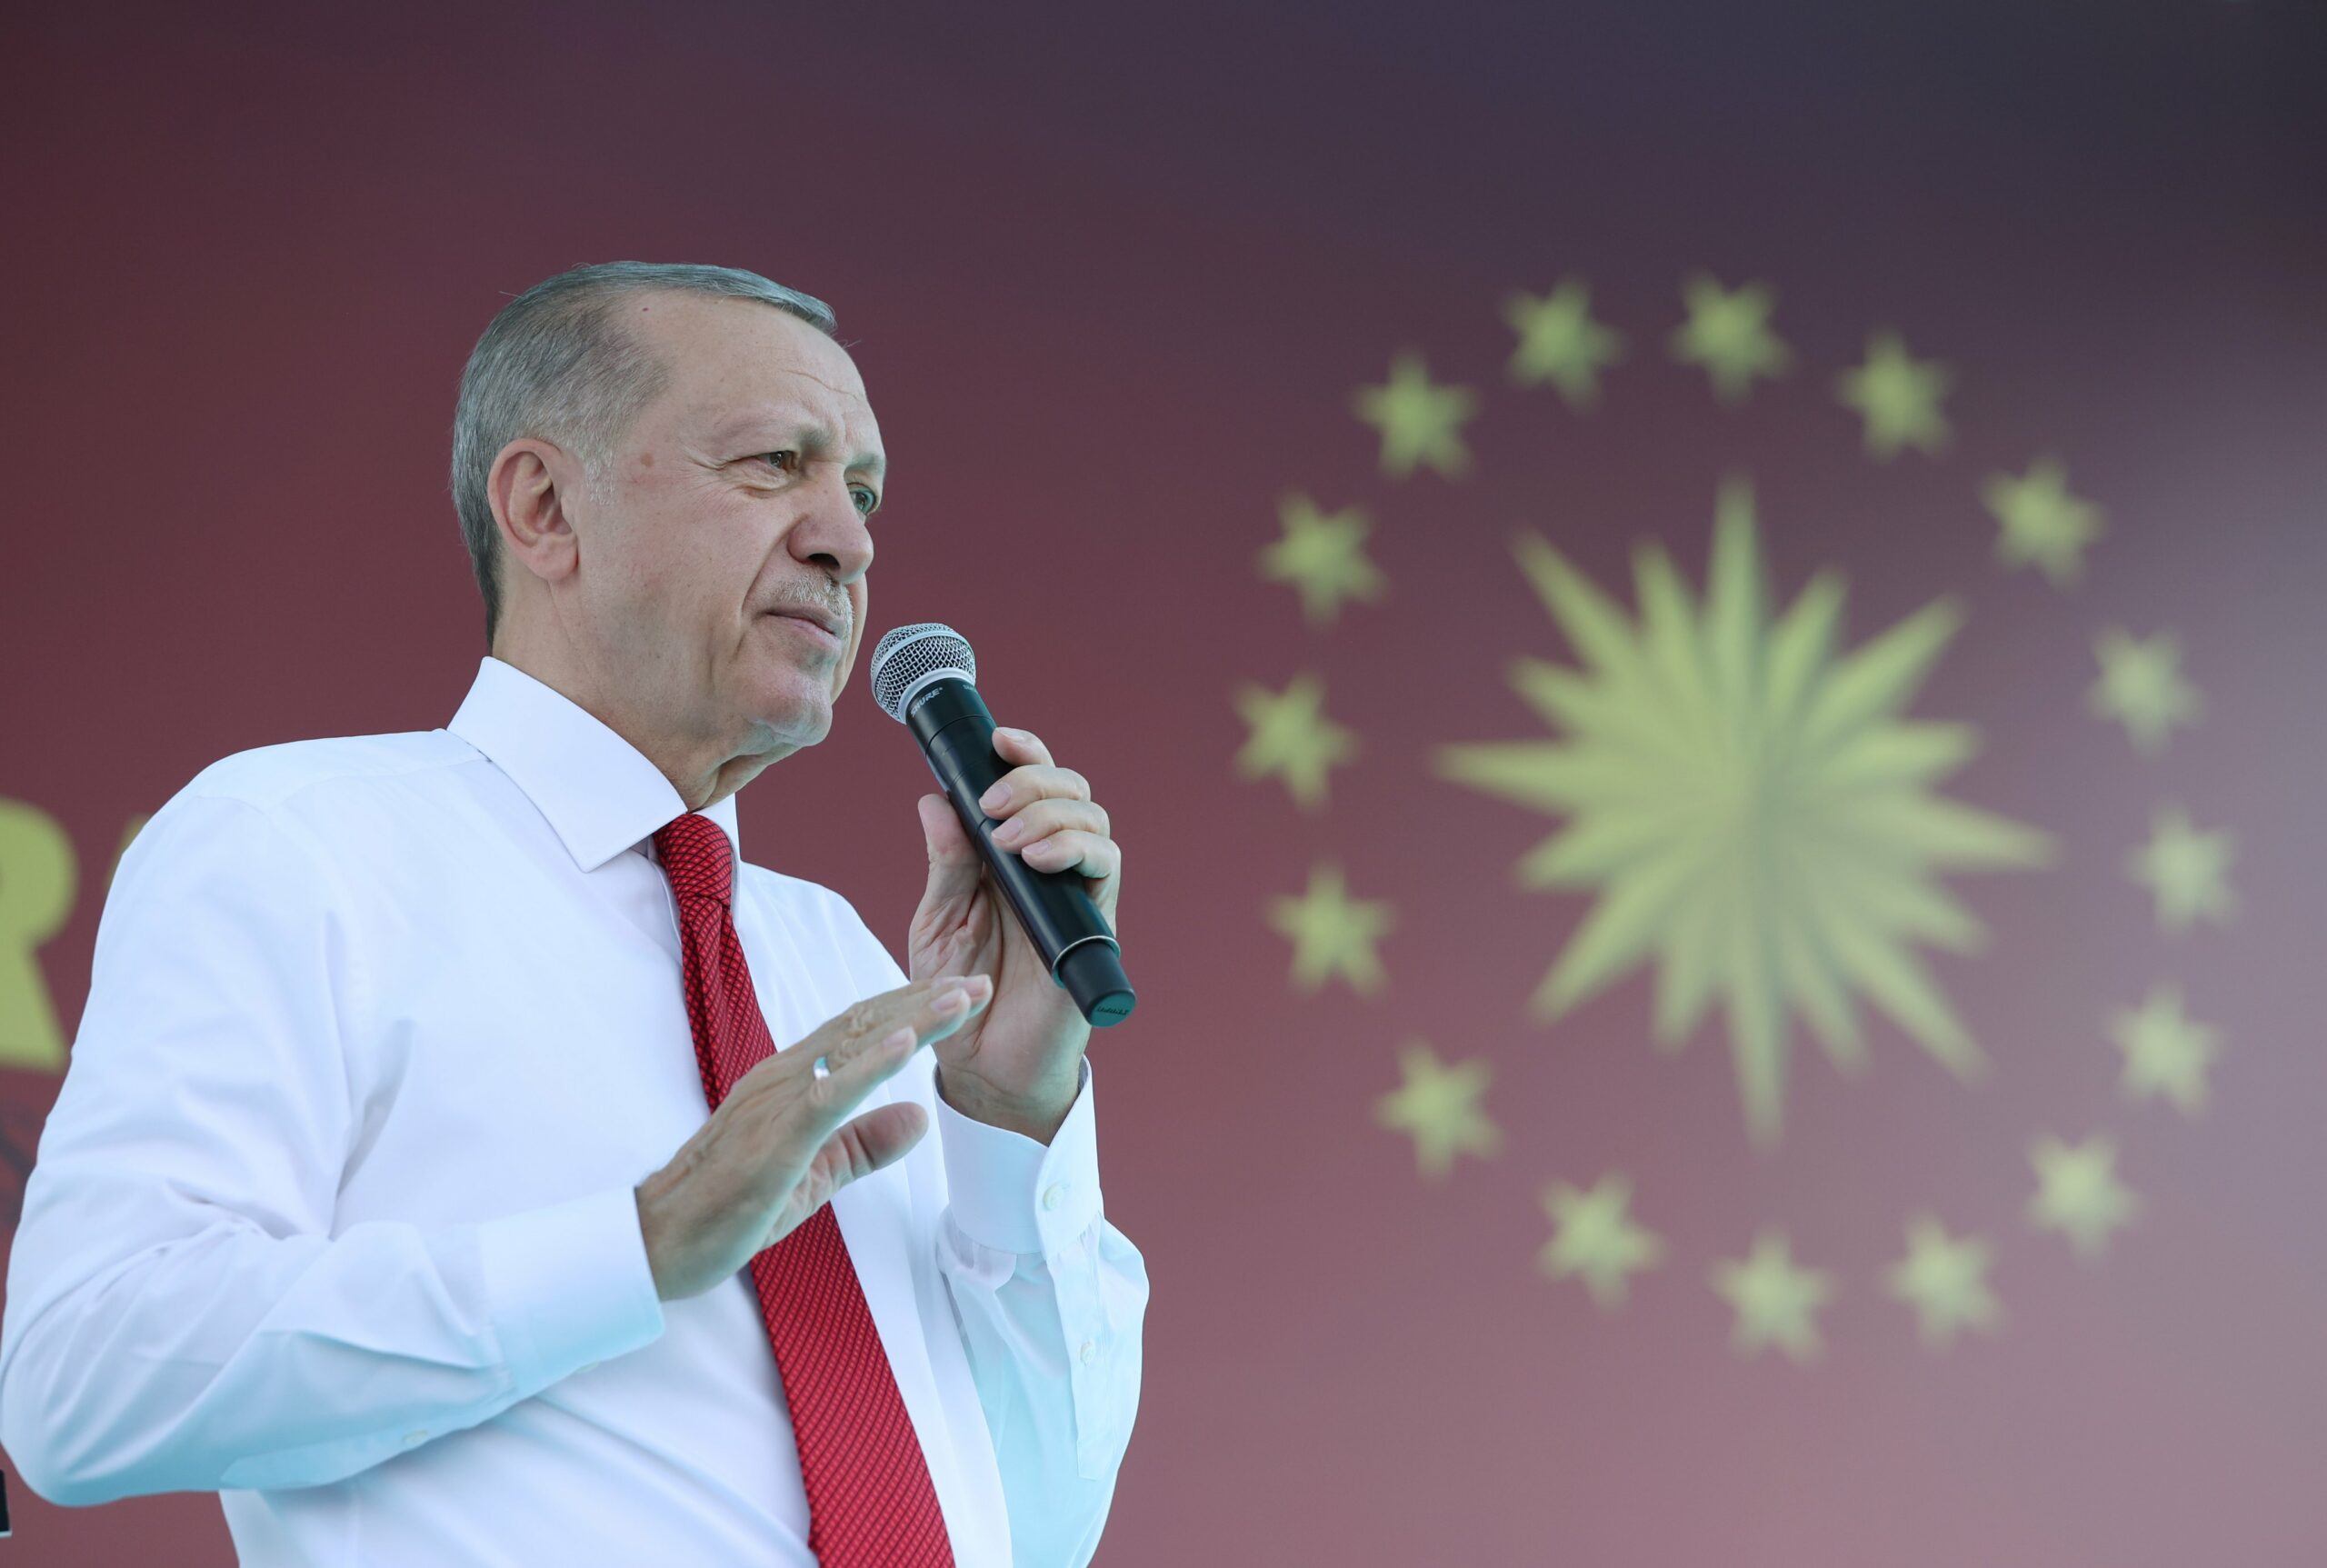 Cumhurbaşkanı Erdoğan yeni dönemine başlıyor